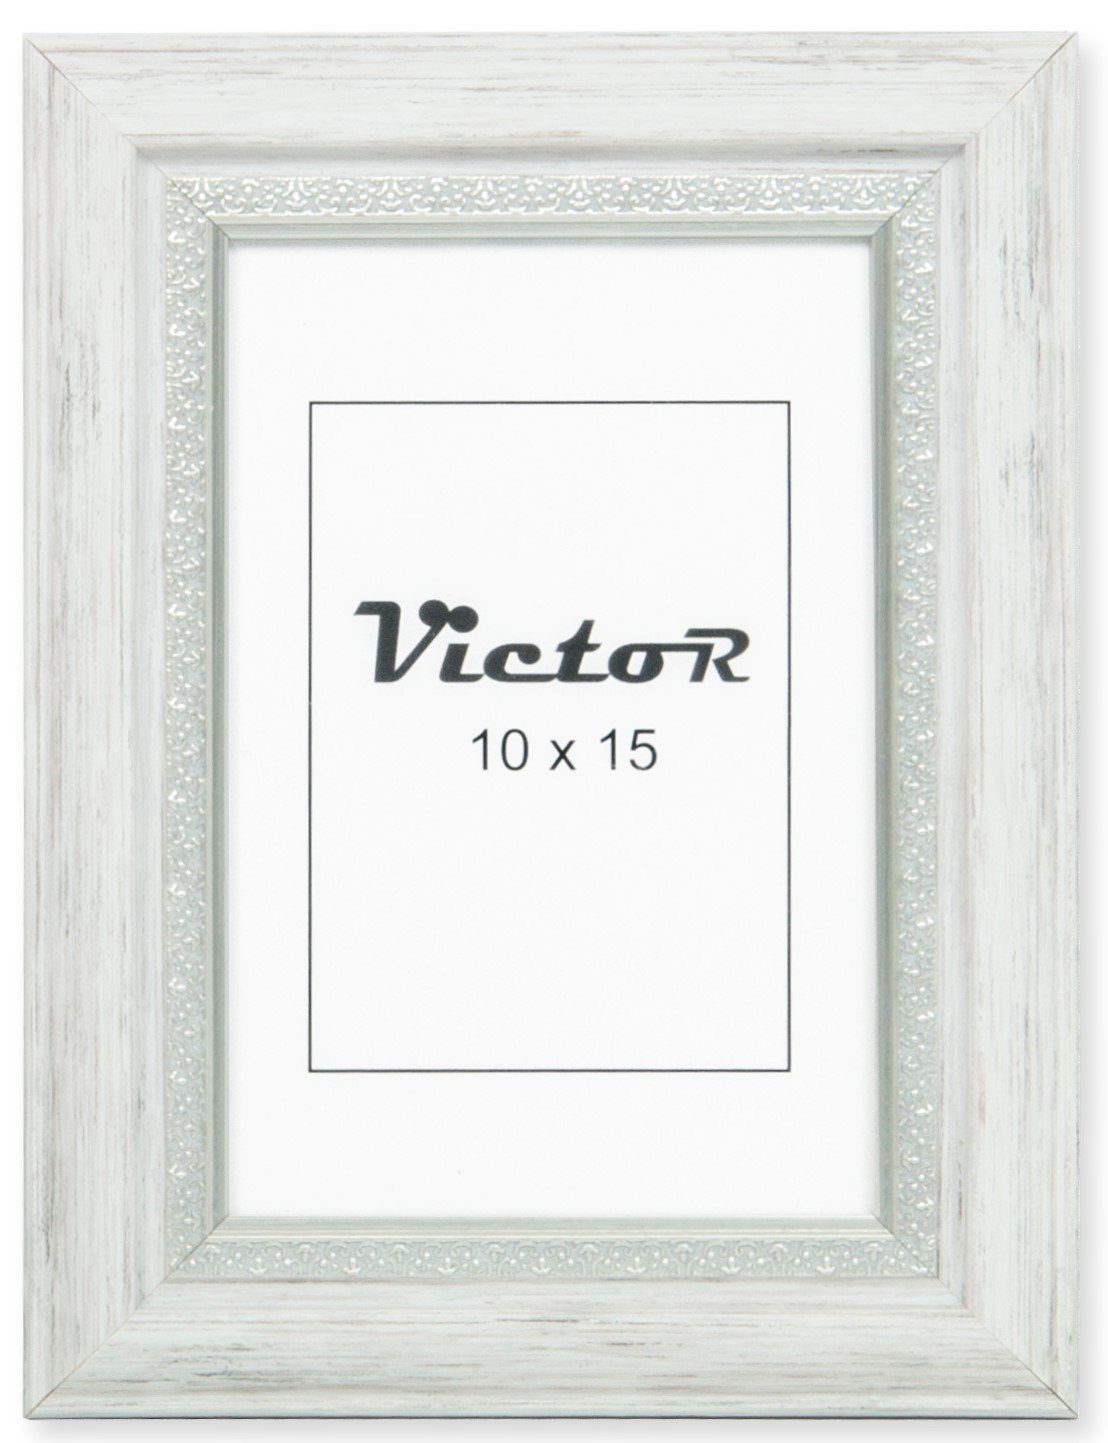 Victor (Zenith) Bilderrahmen Bilderrahmen \"Boho\" - Farbe: Weiß - Größe: 10 x 15 cm, Bilderrahmen Weiß 10x15 cm (A6), Bilderrahmen Vintage, Landhaus